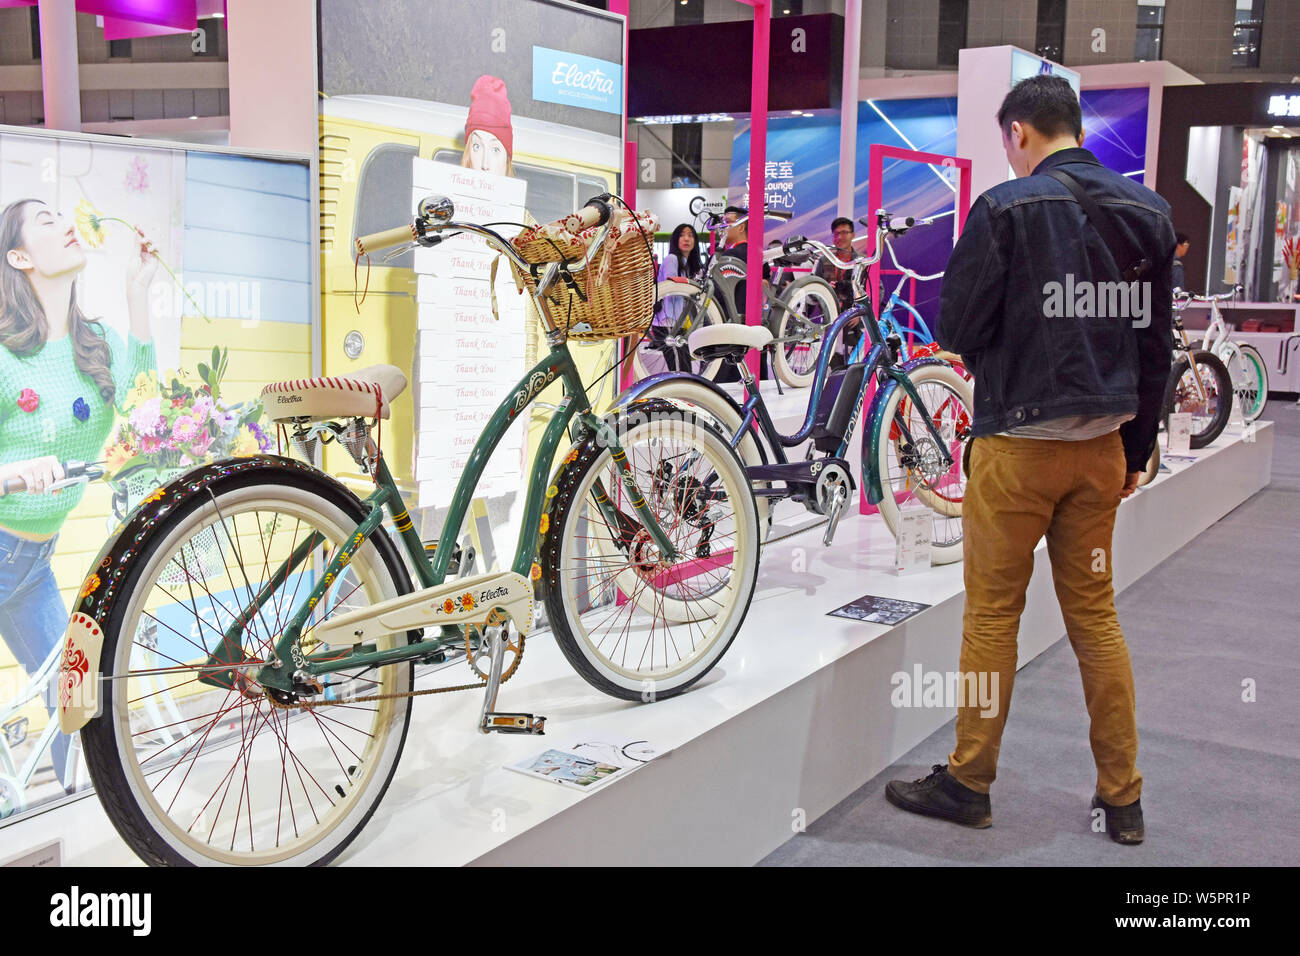 La feria Unibike lo confirmó: las bicicletas que vienen son más grandes,  gordas y monstruosas – El blog de Tuvalum